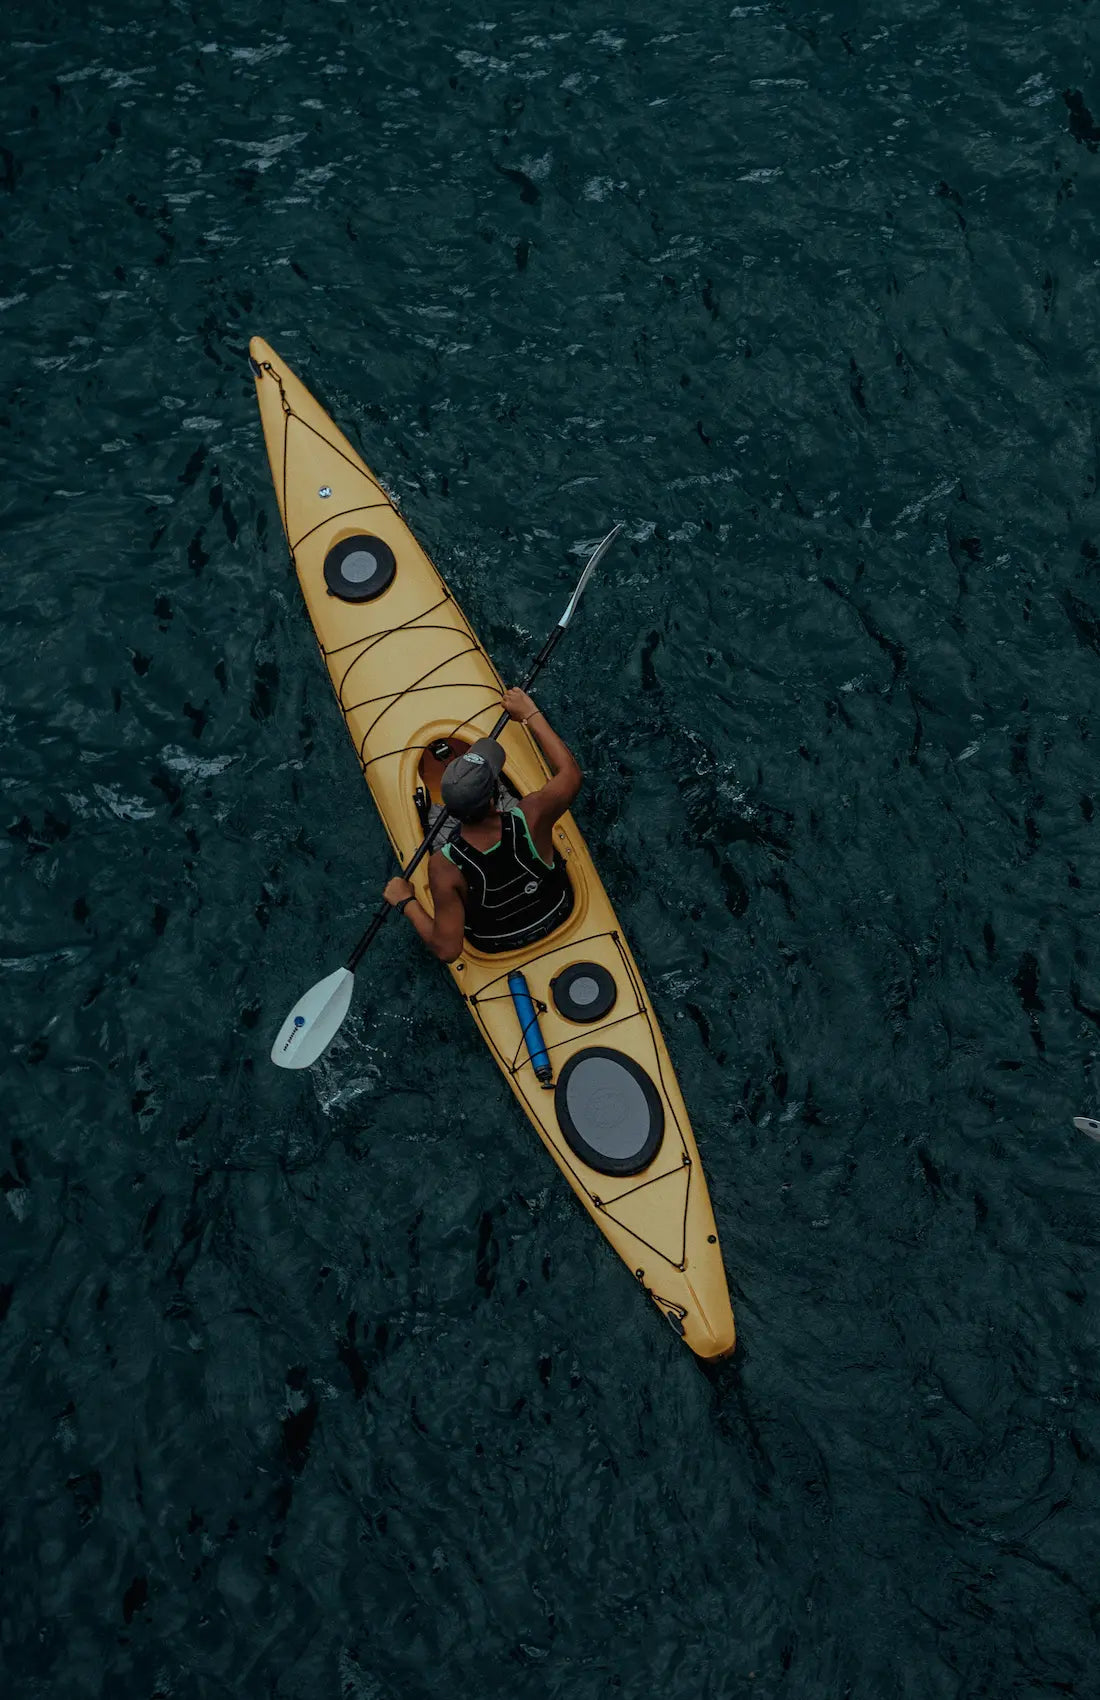 Kayak in water 